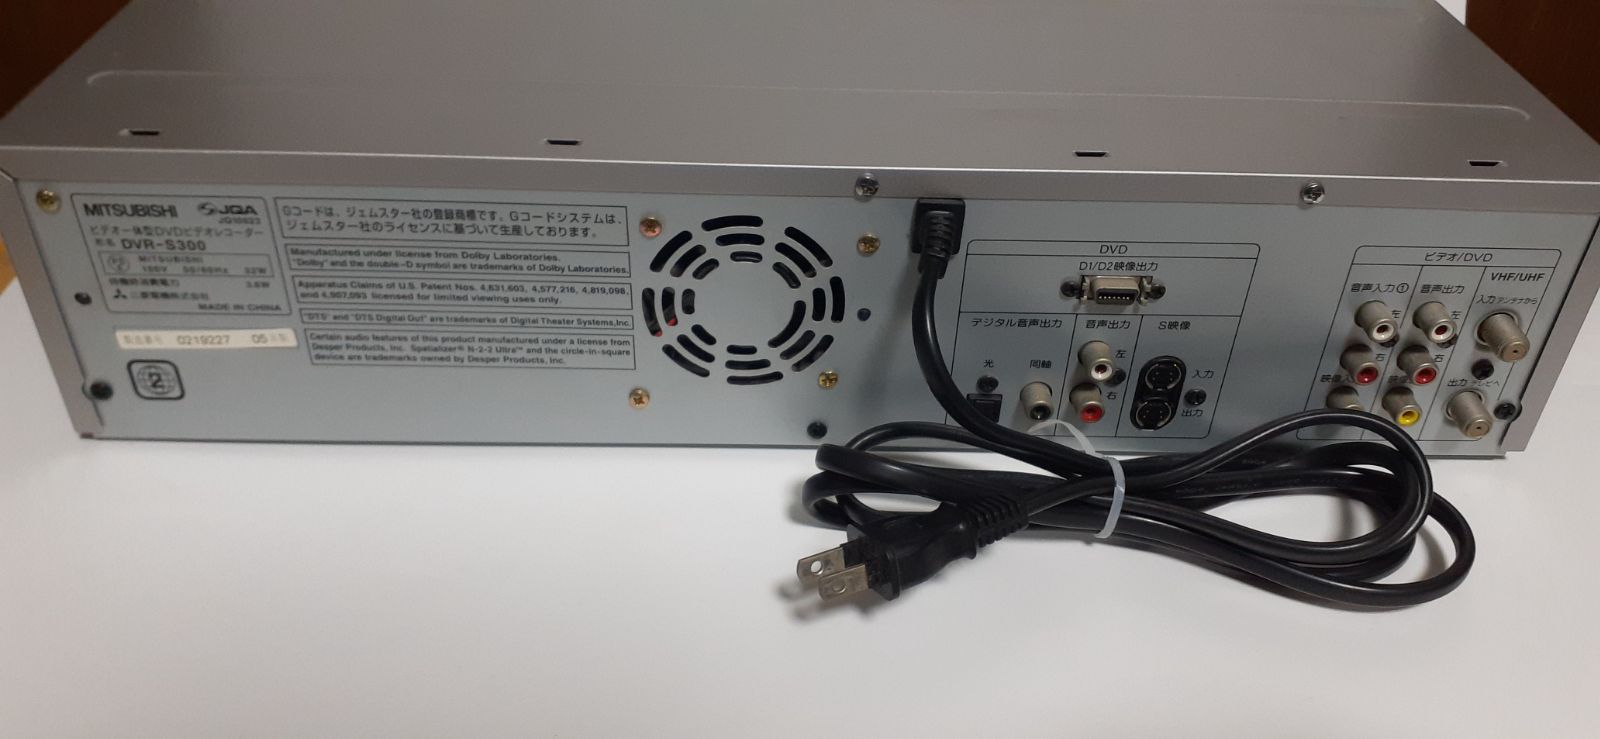 美品 MITSUBISHIビデオ一体型DVDレコーダーDVR-S300完動品・リモコン